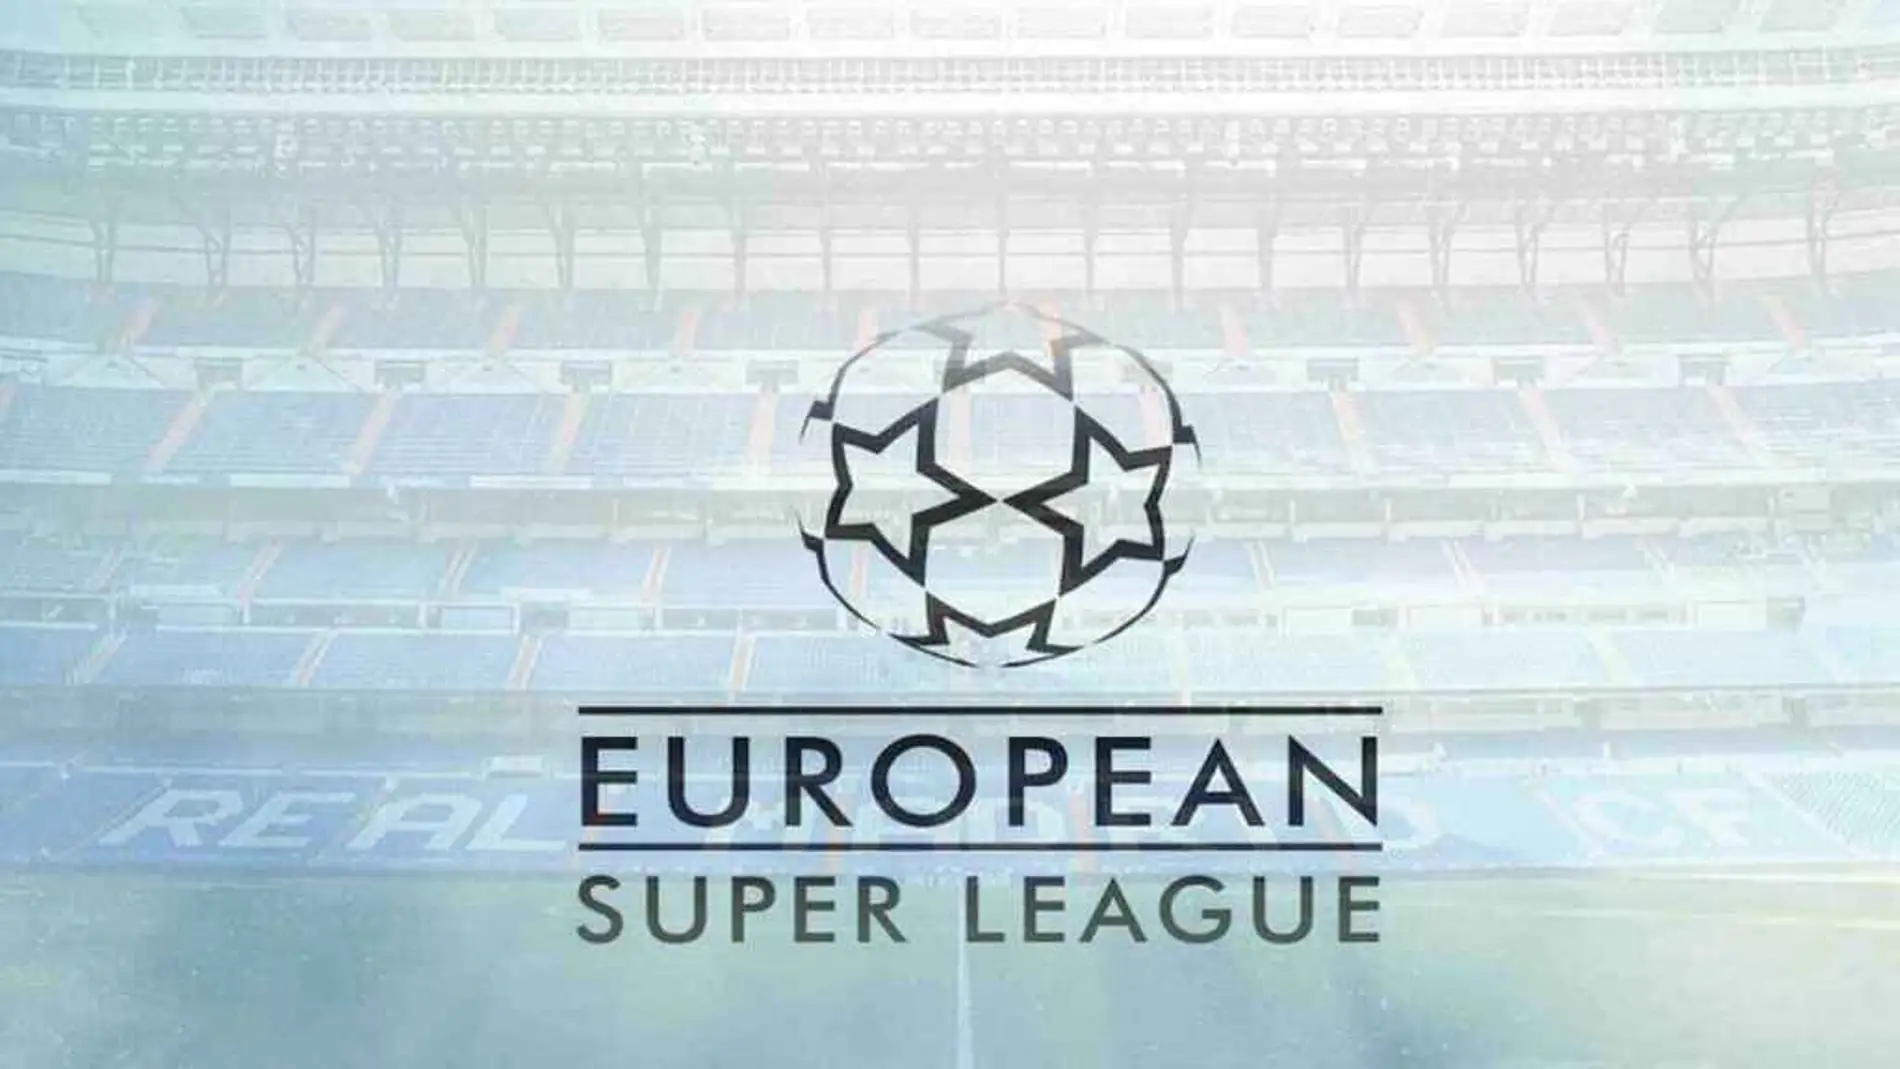 Deportes Antena 3 (20-04-21) La Superliga europea, un negocio de más de 7.000 millones de euros para aumentar los ingresos de los grandes clubes